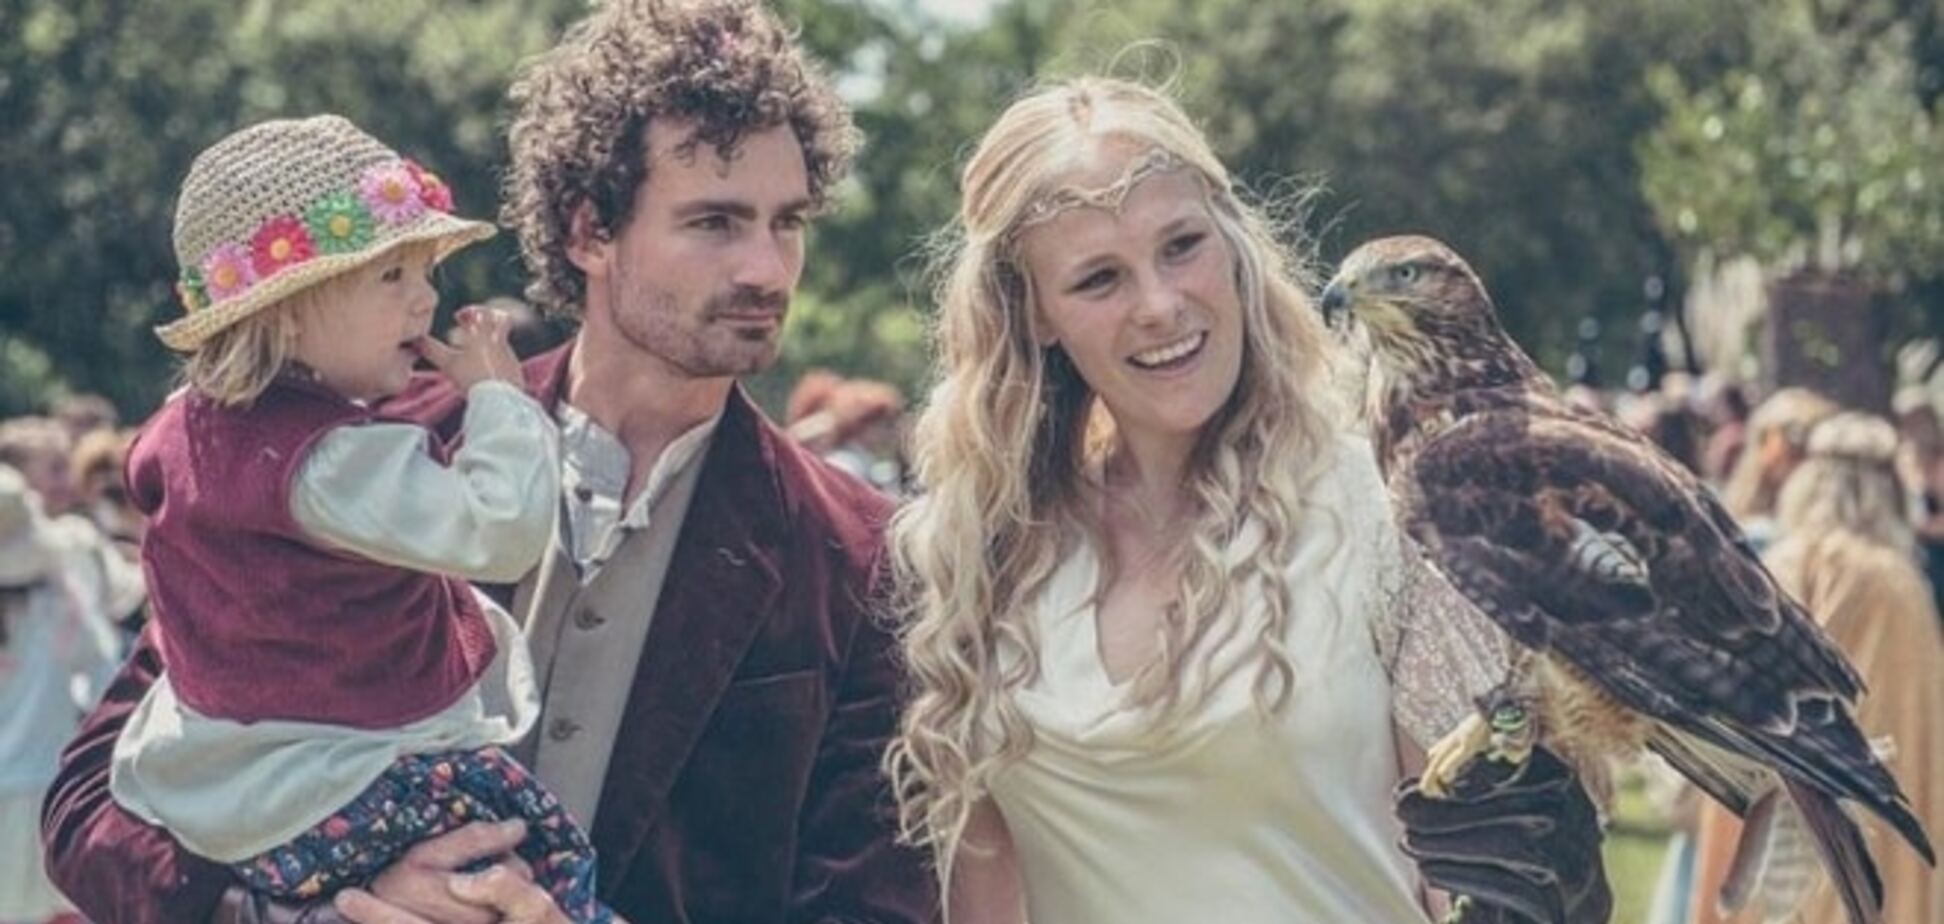 Пара устроила потрясающую свадьбу в стиле 'Властелина колец': сказочные фото